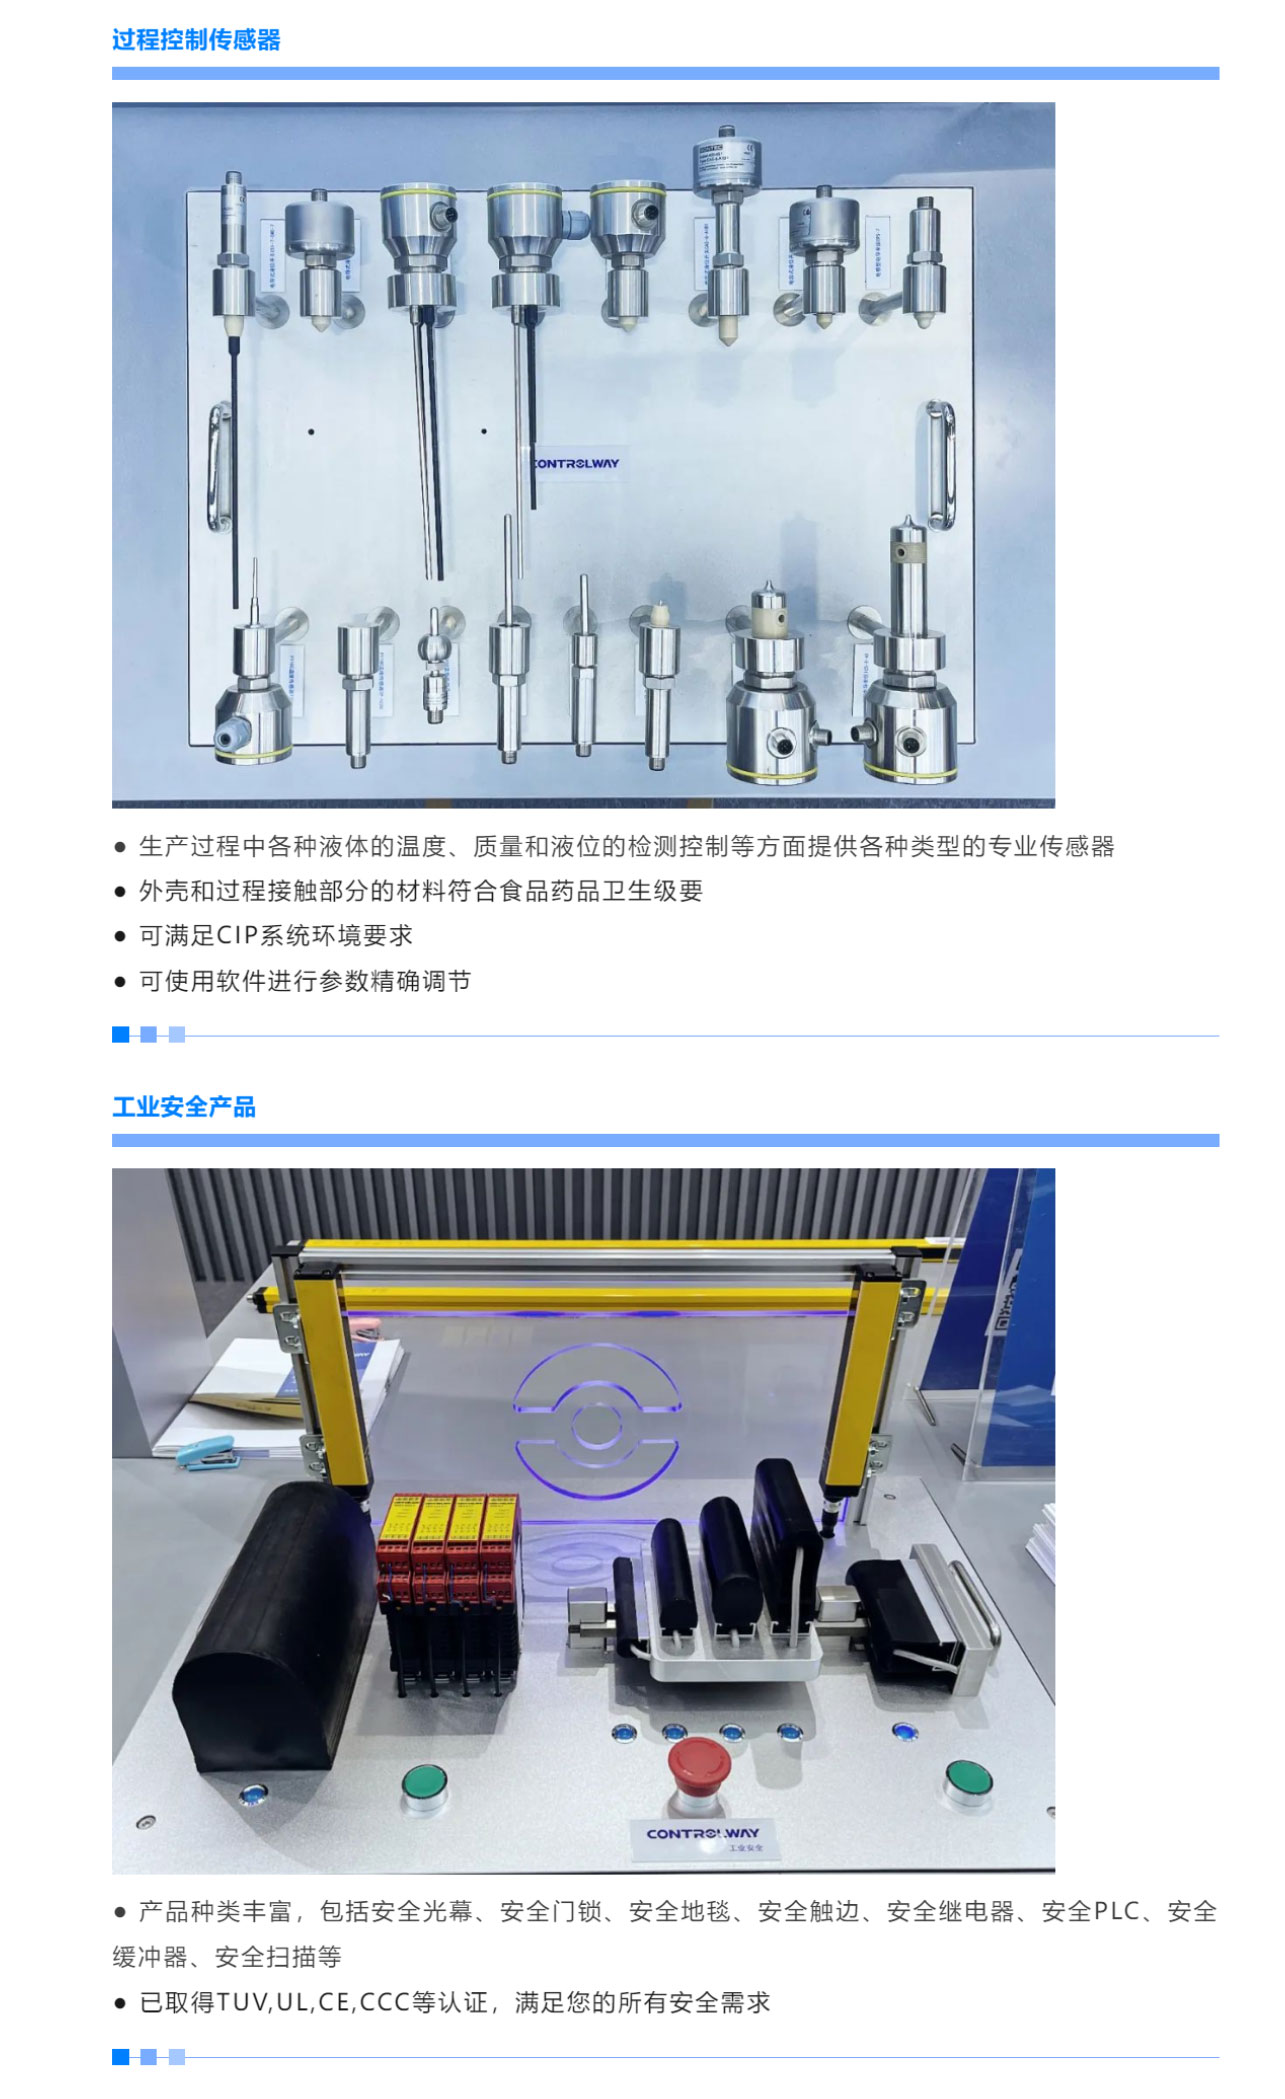 1、SIAF2023广州国际工业自动化技术及装备展览会_05